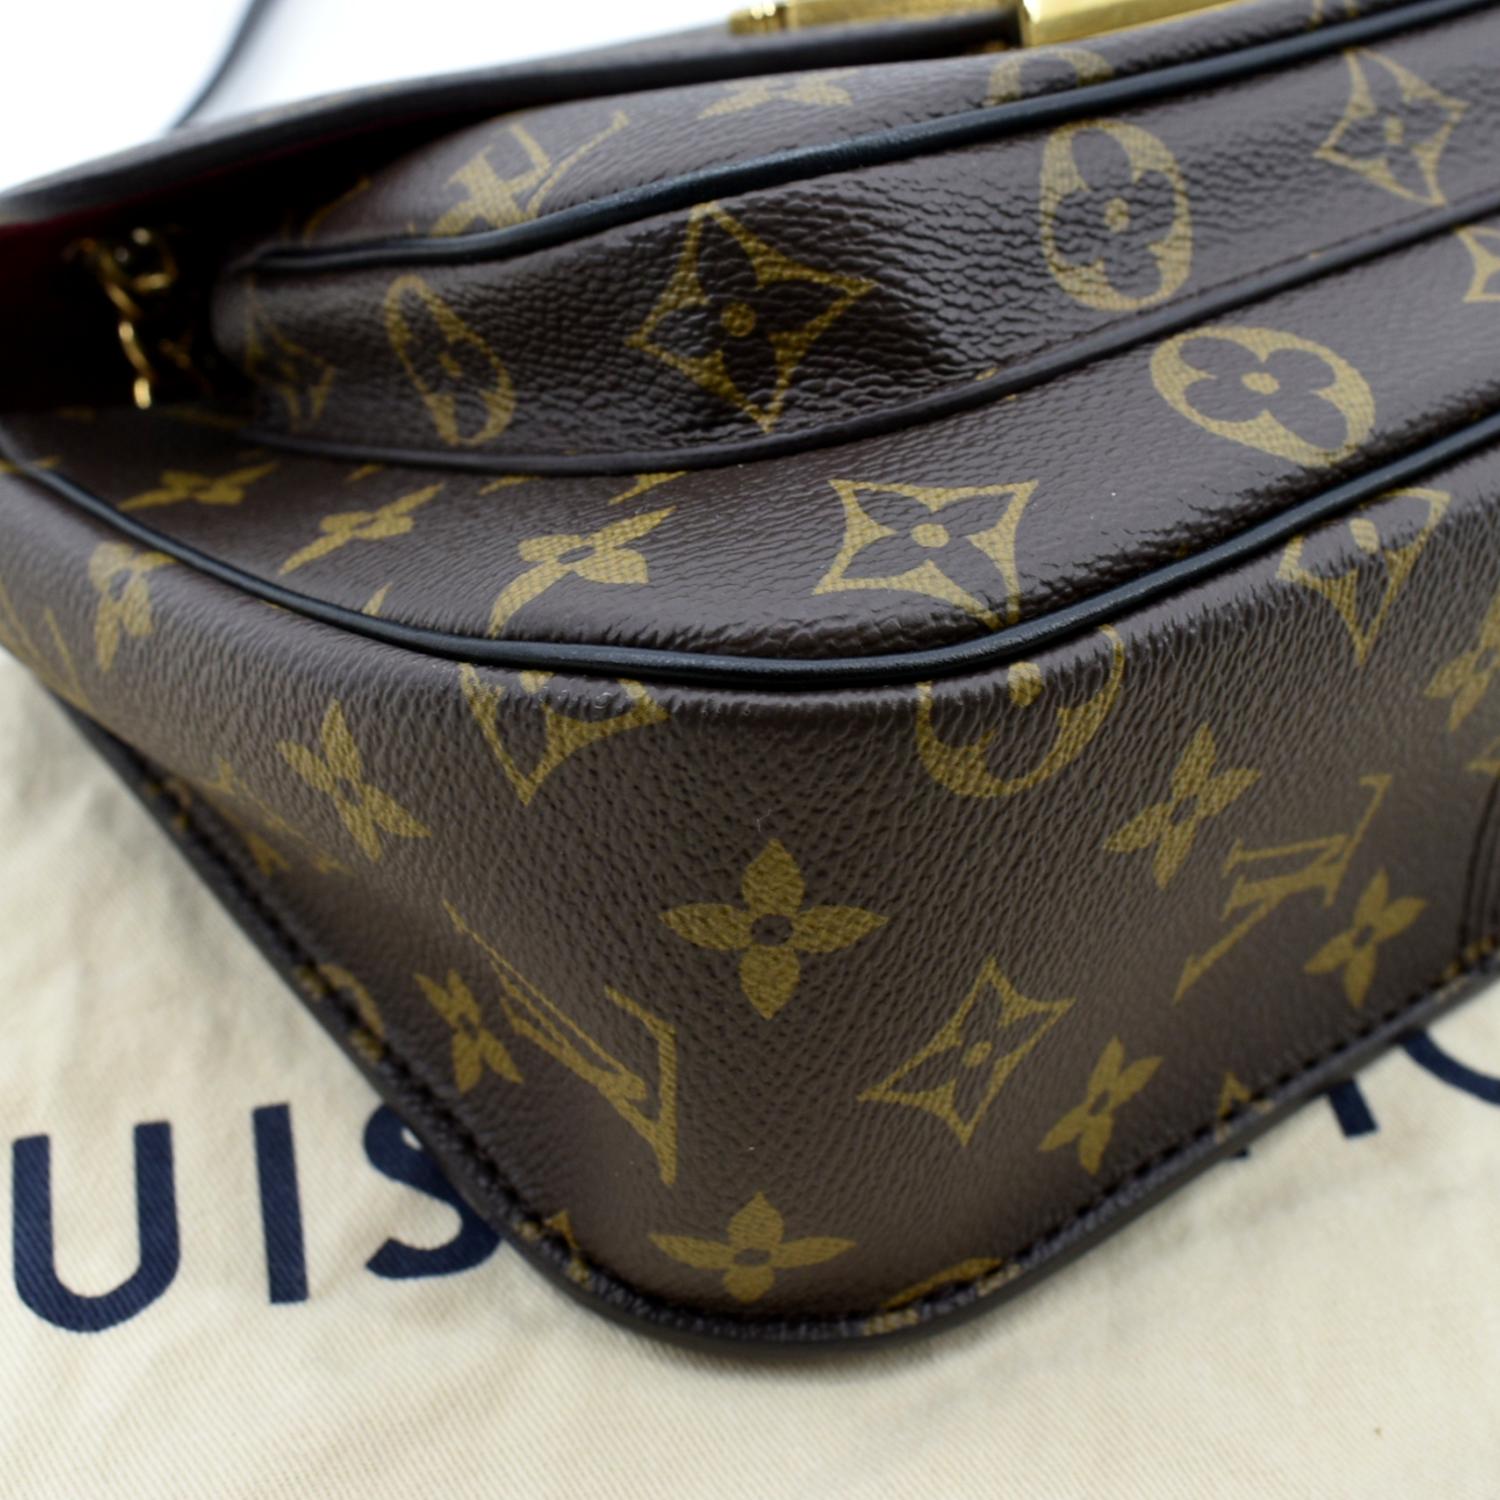 Louis Vuitton Monogram Canvas Passy Bag Louis Vuitton